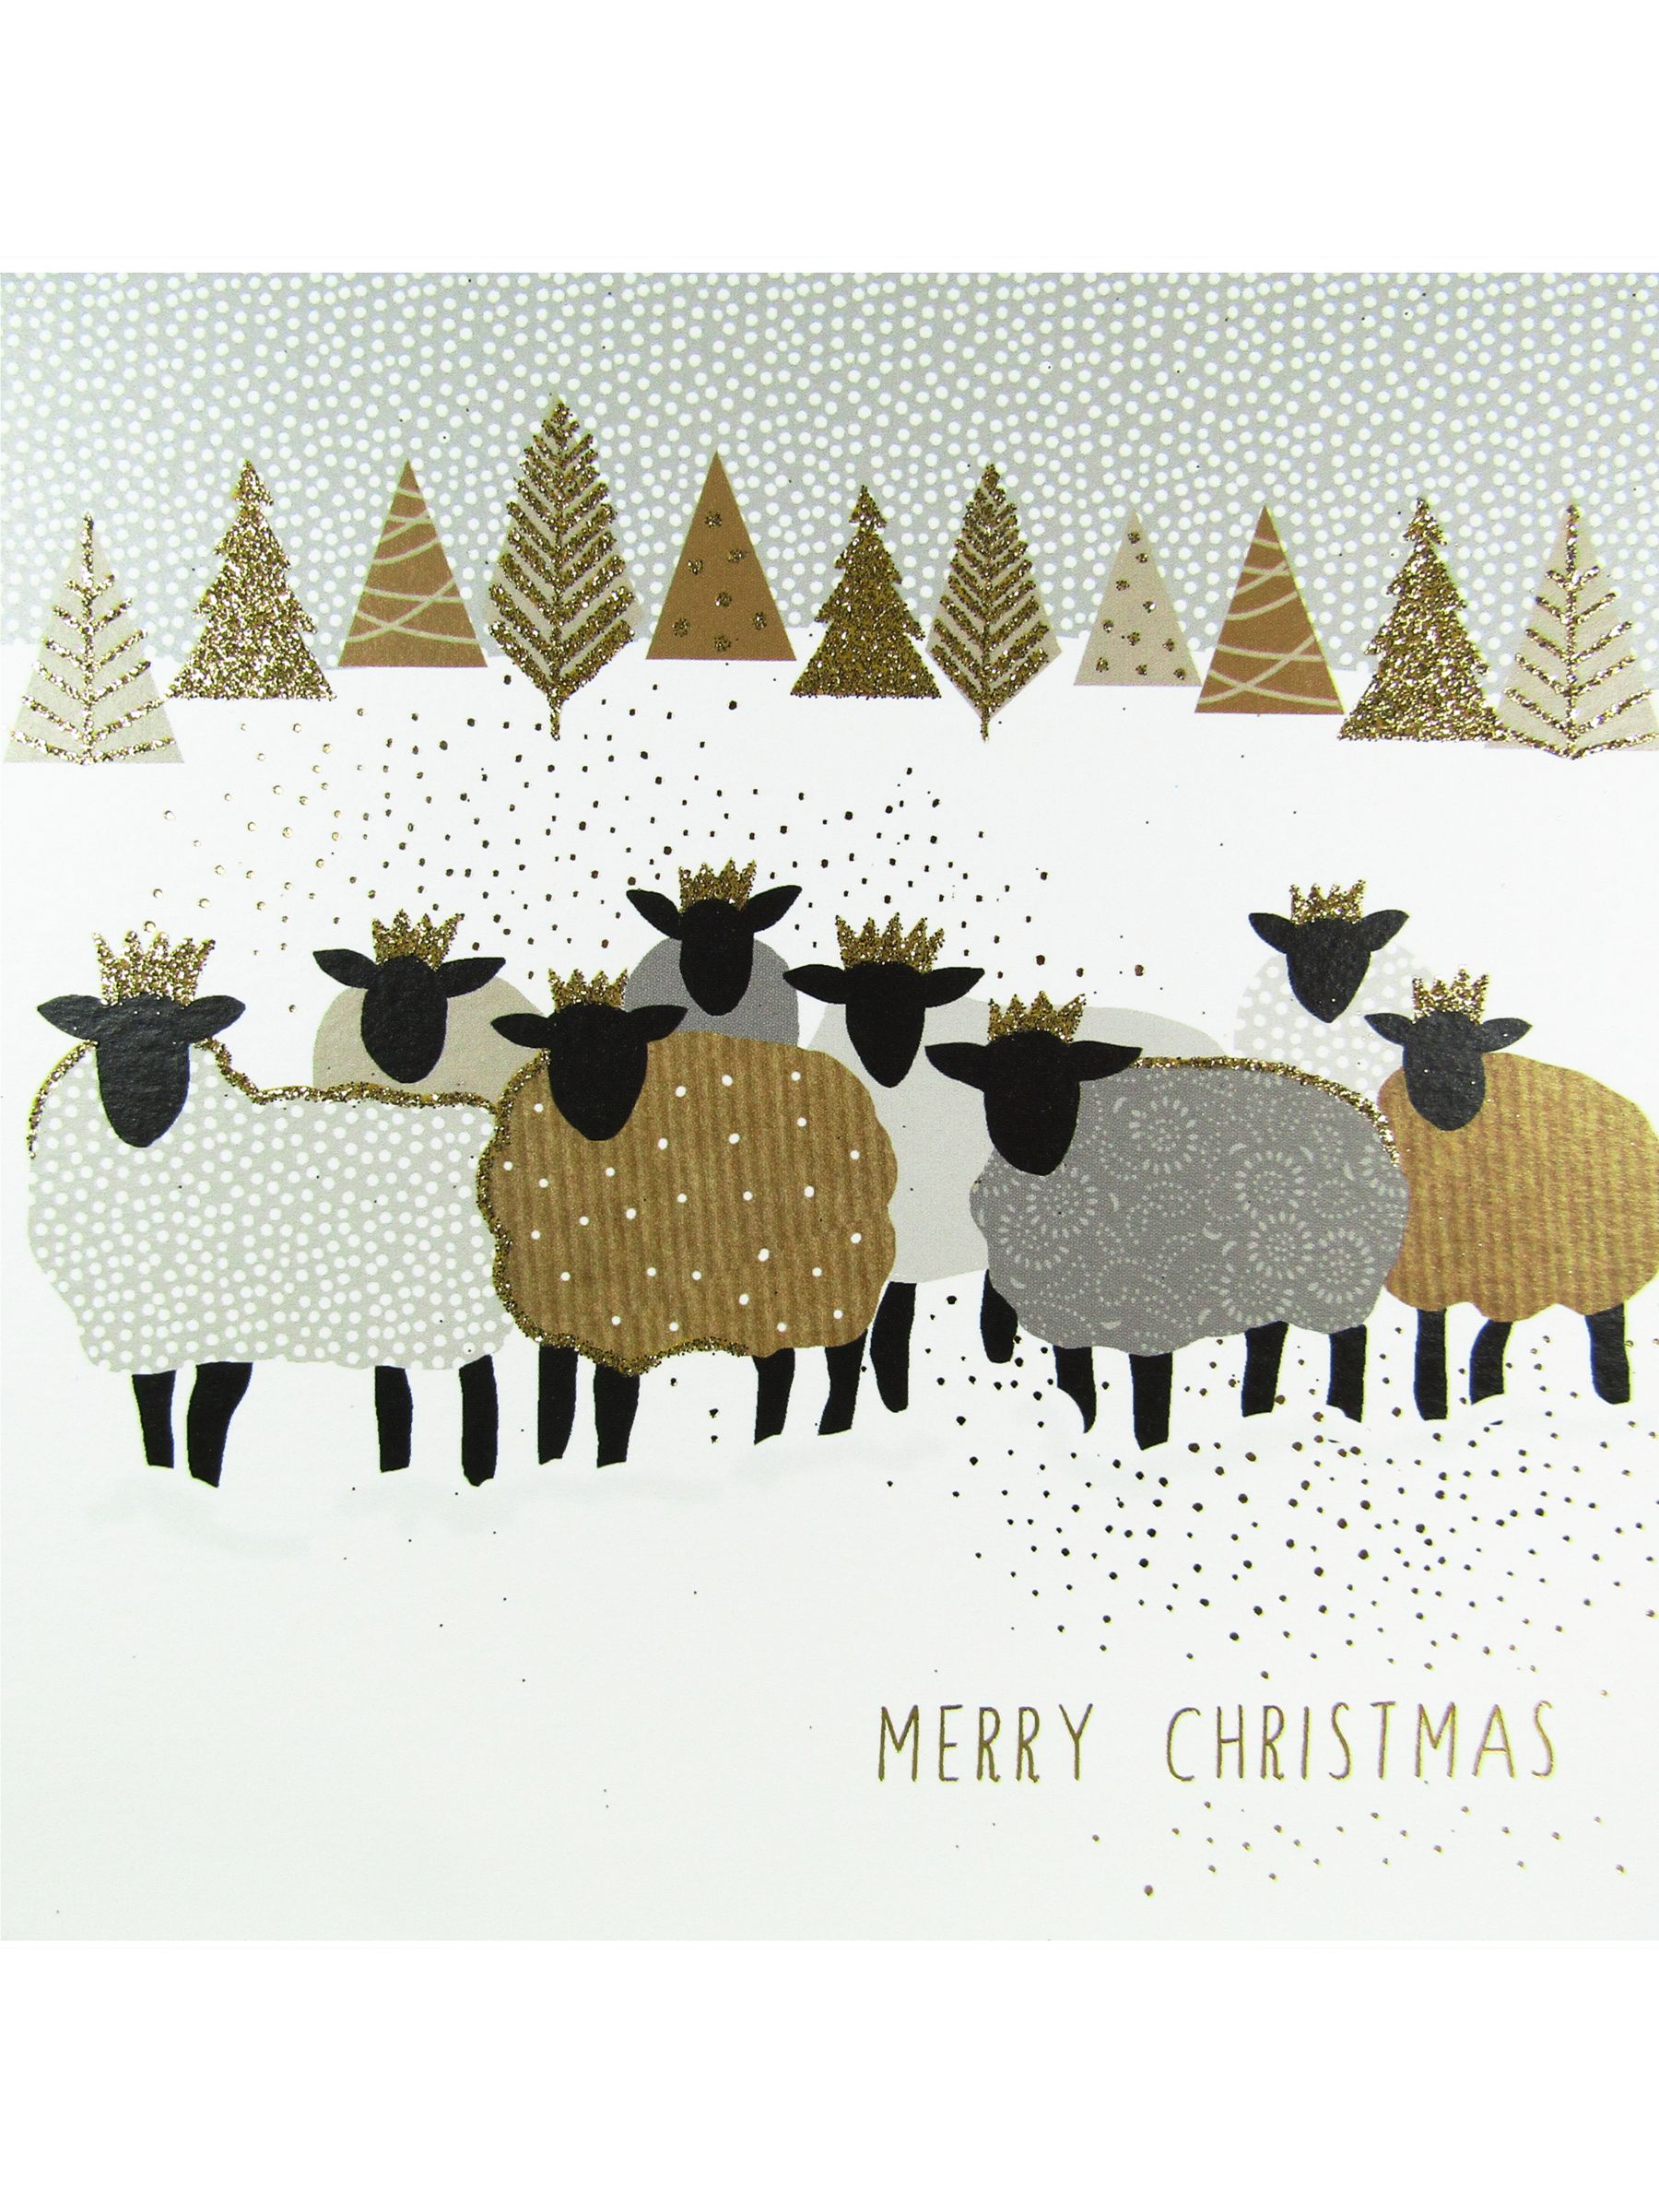 Portfolio Christmas Sheep Card